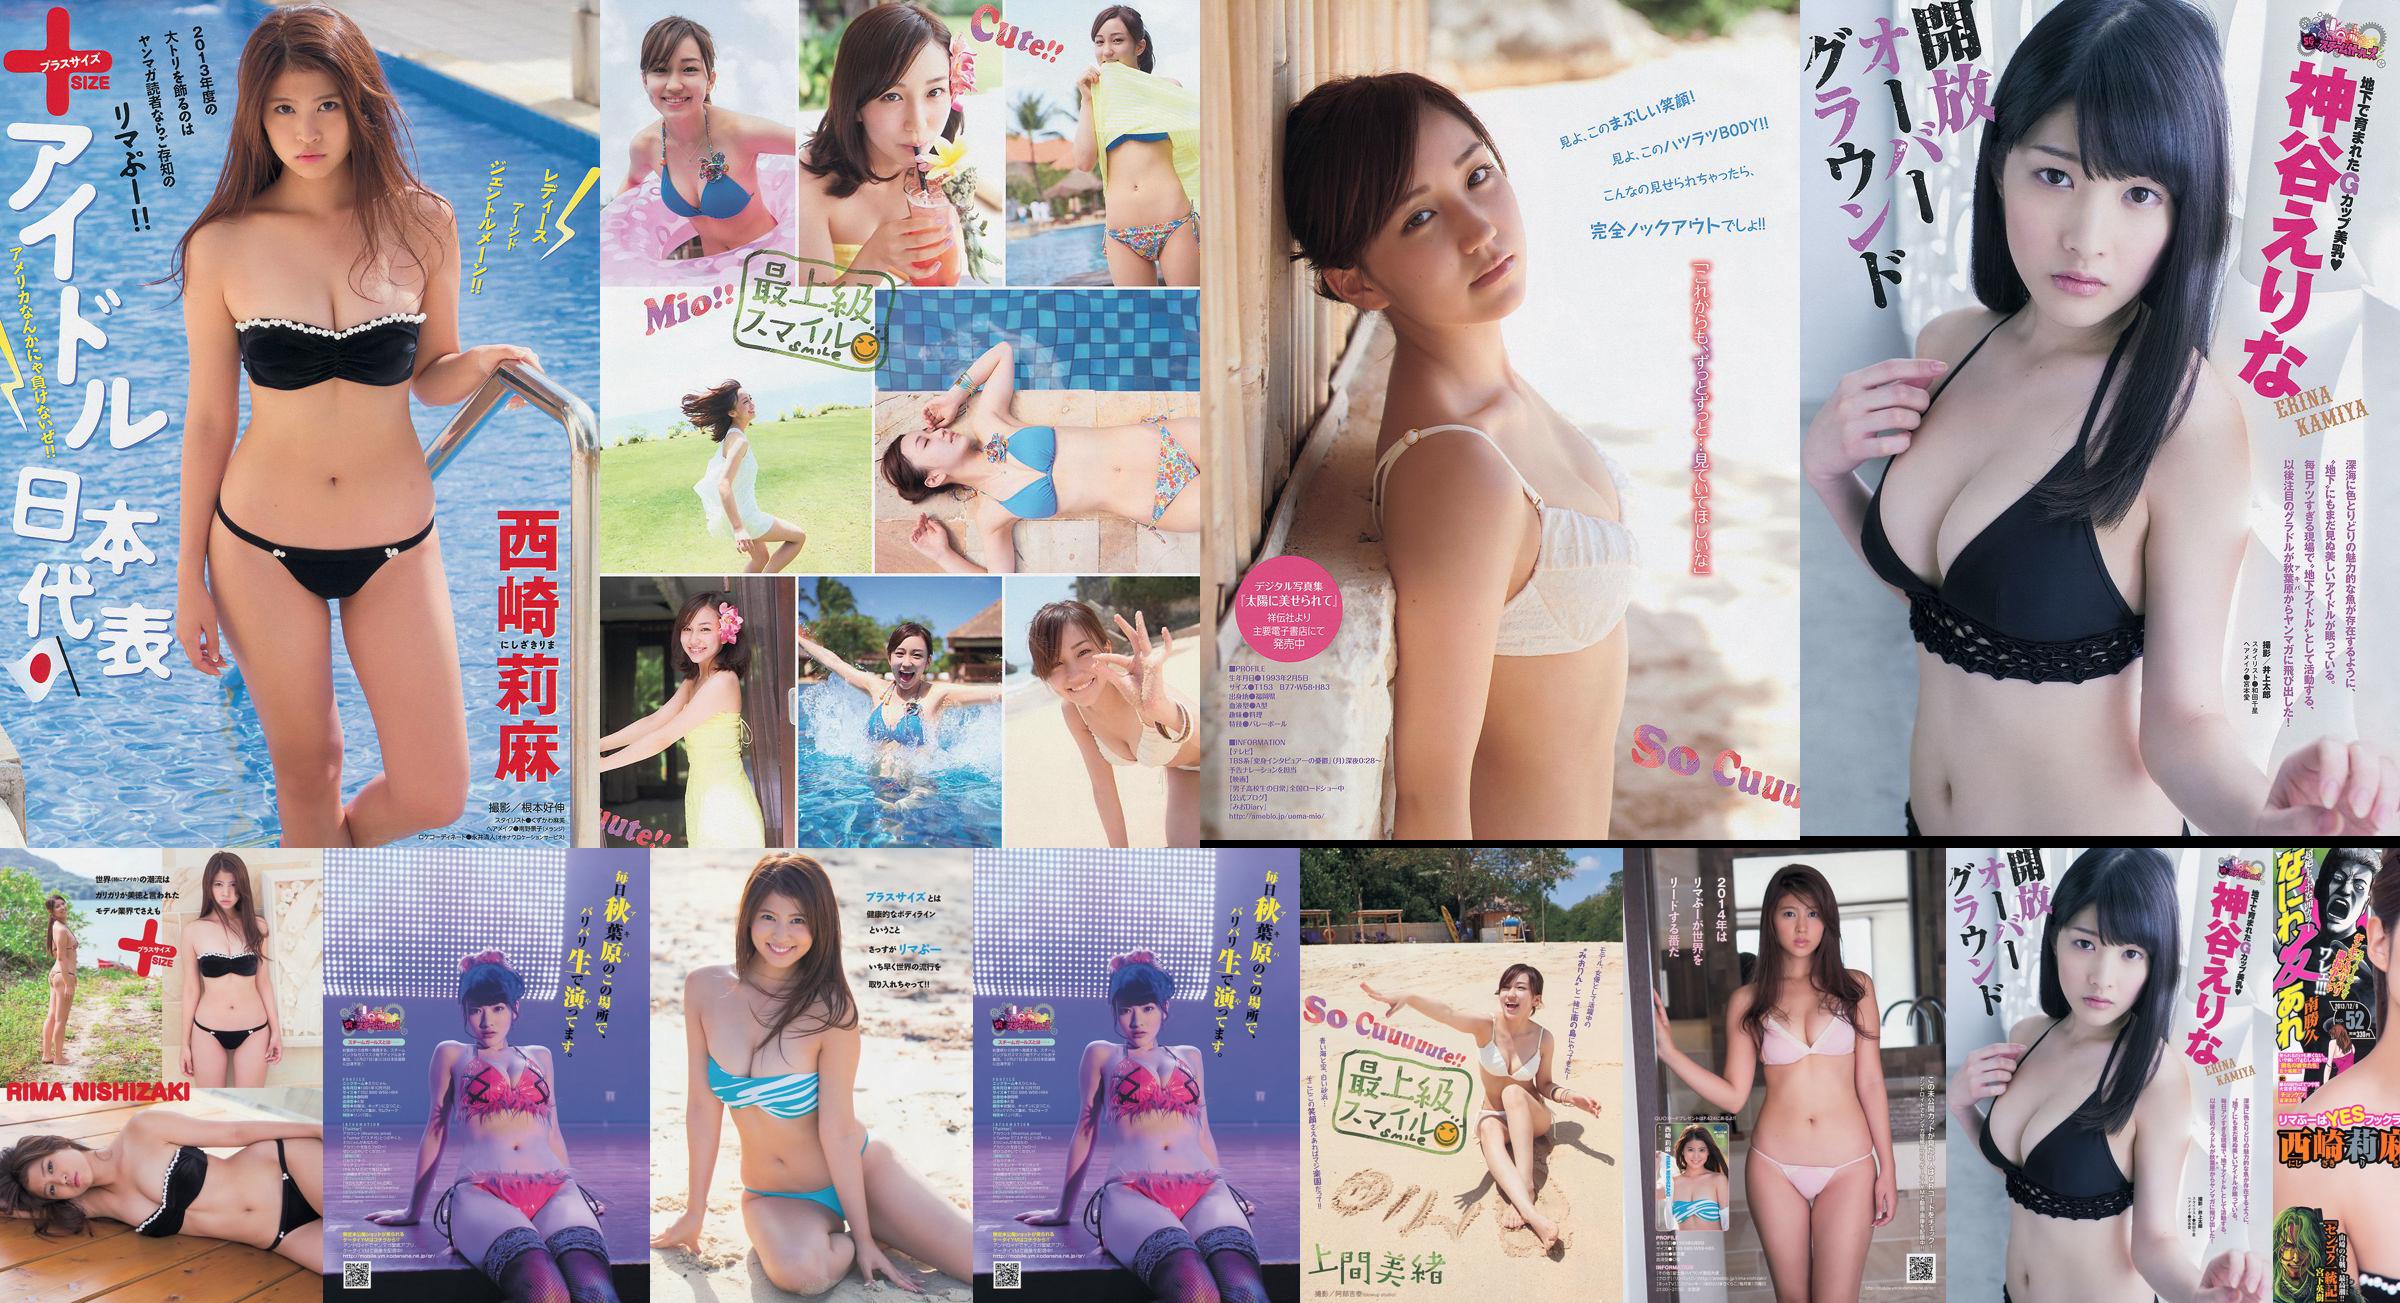 [Young Magazine] Rima Nishizaki Mio Uema Erina Kamiya 2013 No.52 Photo Moshi No.6ee277 Page 6